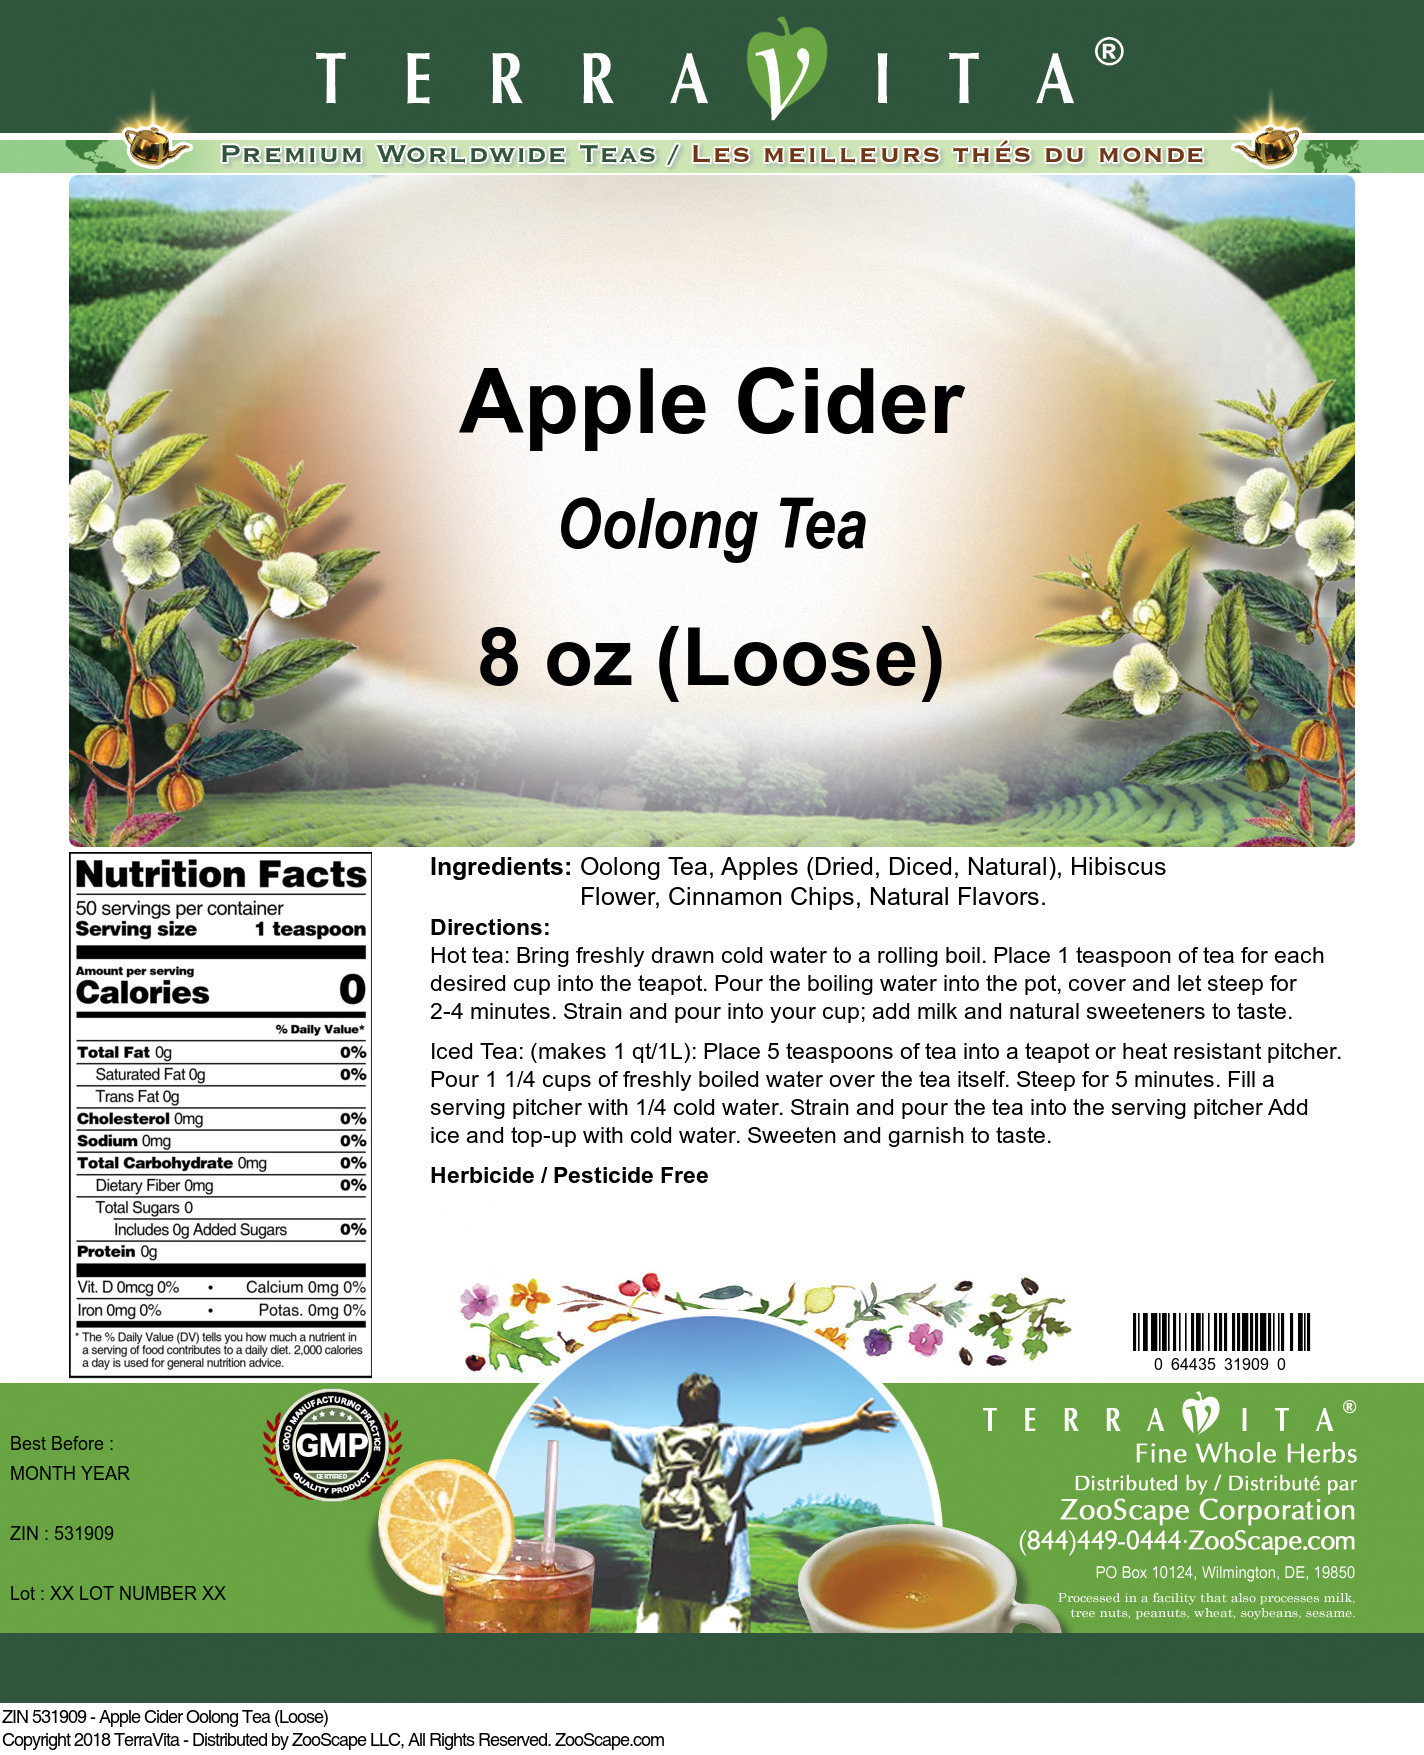 Apple Cider Oolong Tea (Loose) - Label